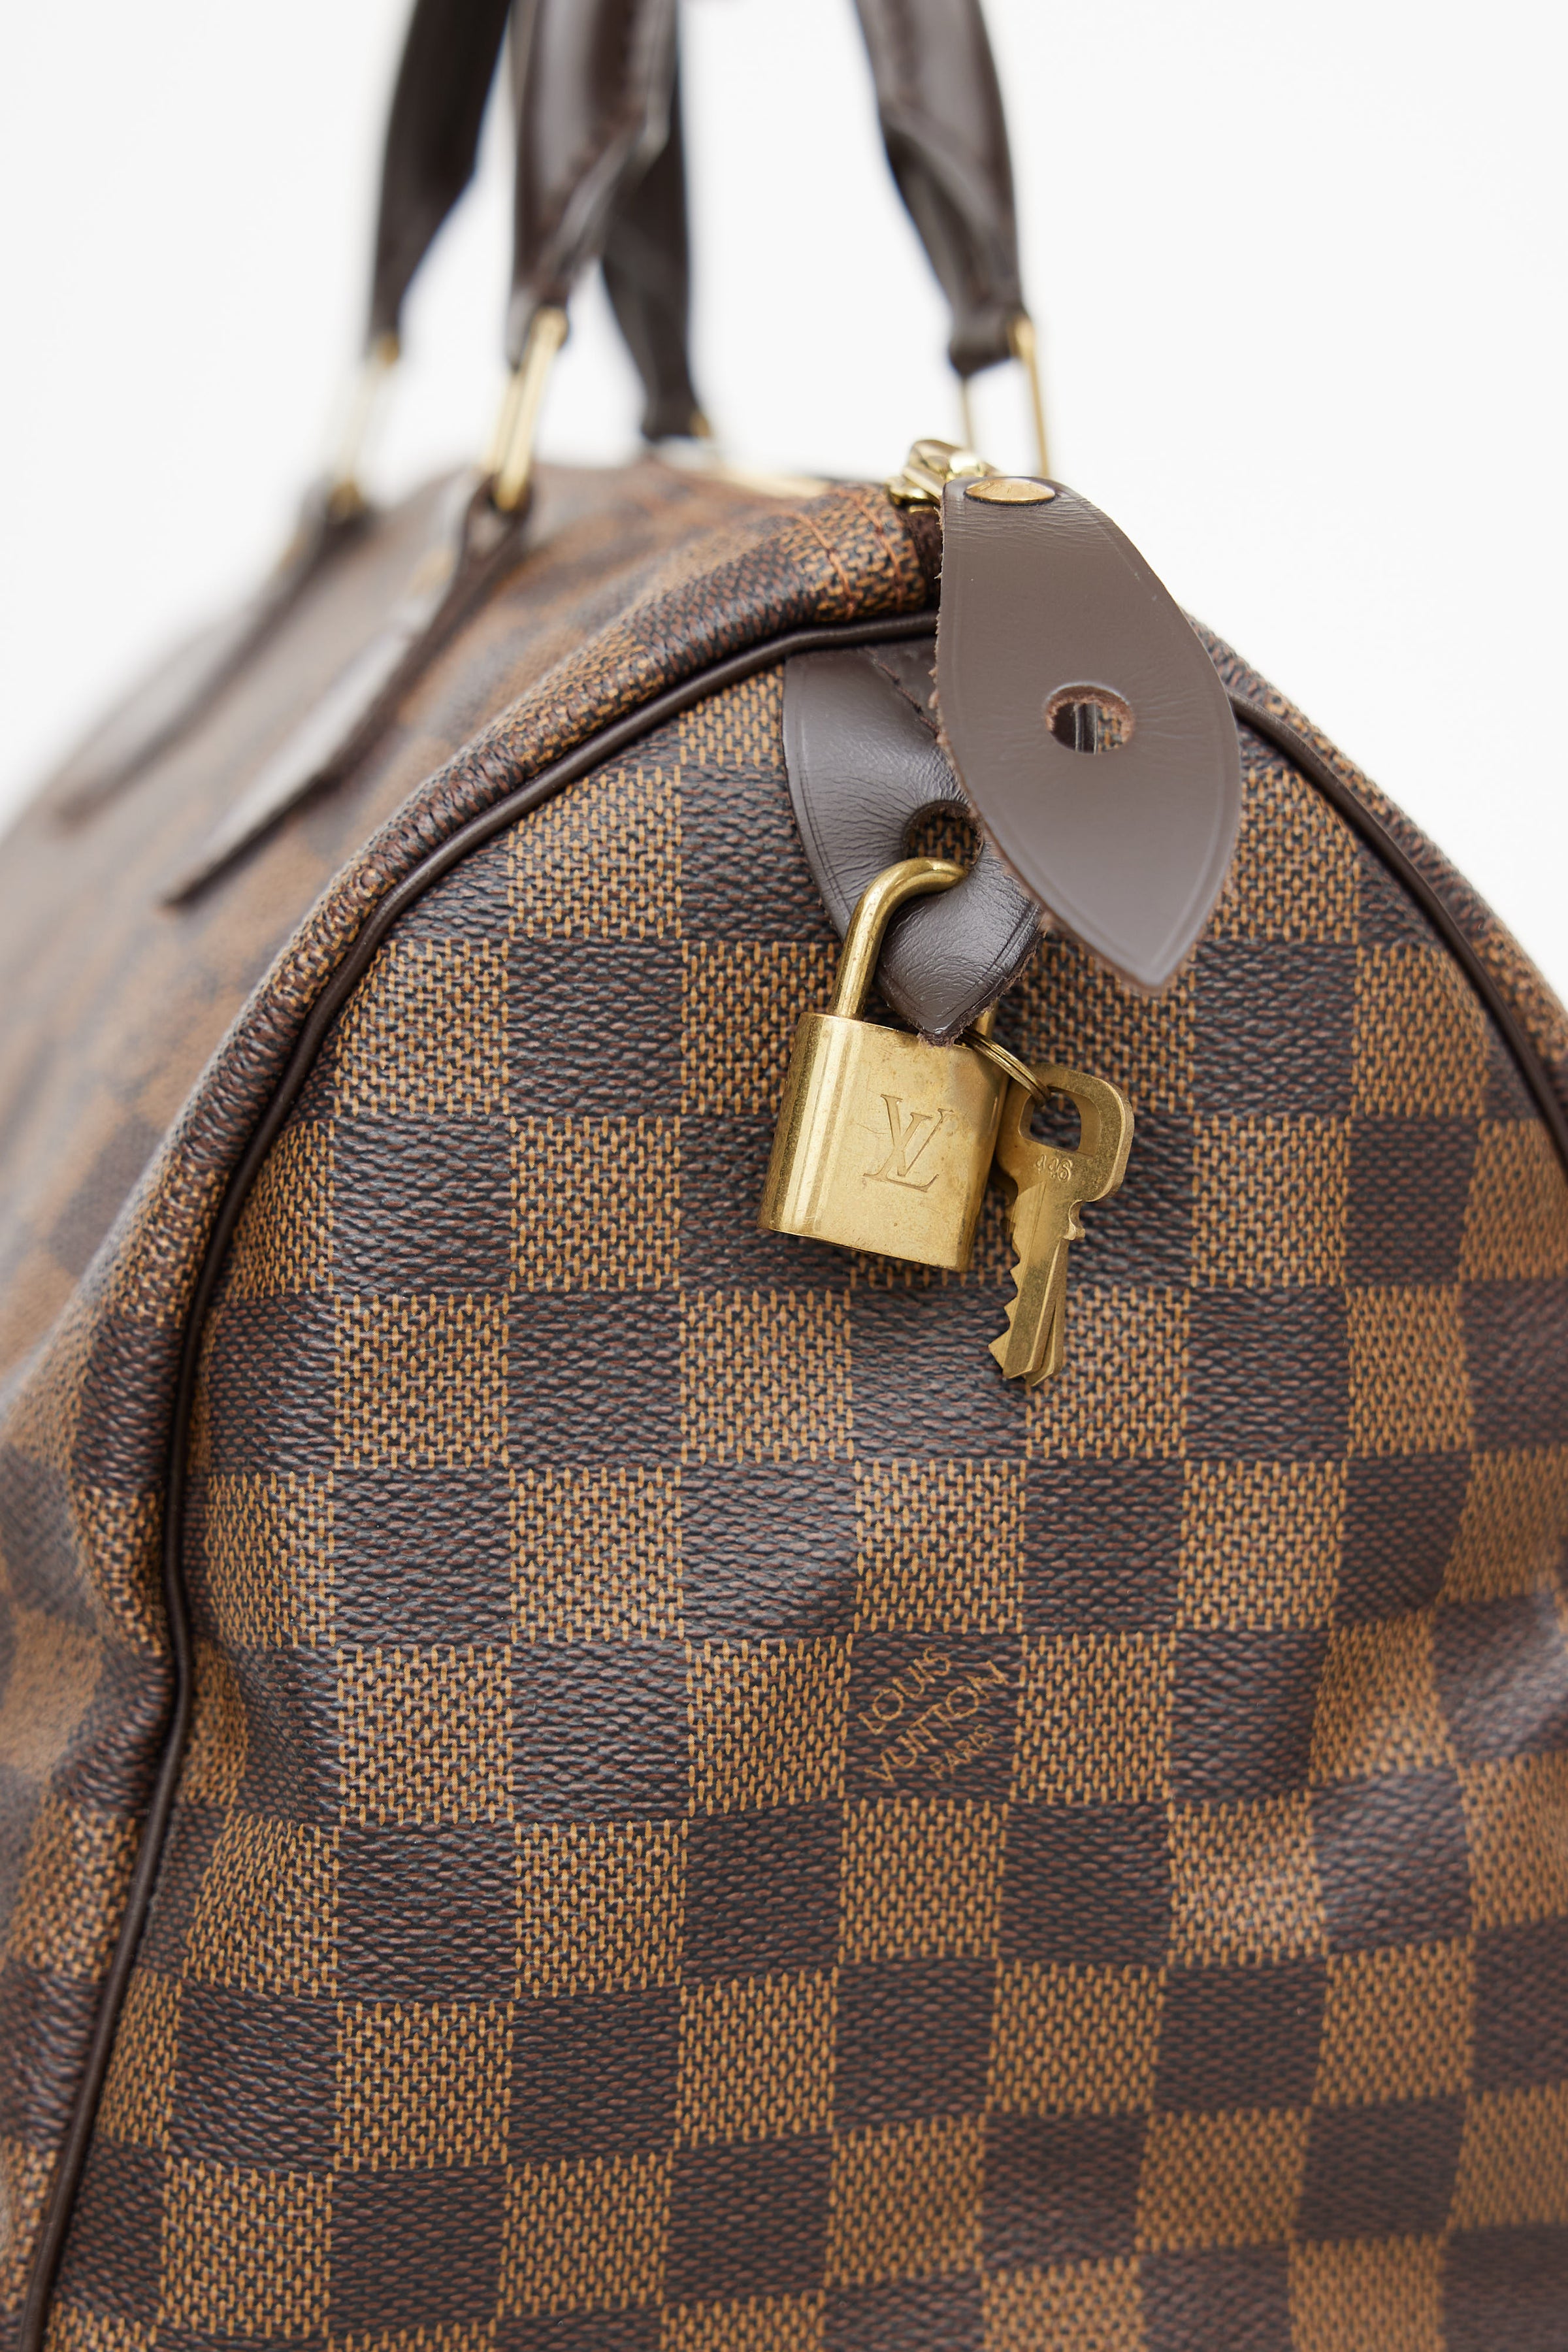 Louis Vuitton // 2006 Brown Damier Ebene Speedy 30 Handbag – VSP Consignment